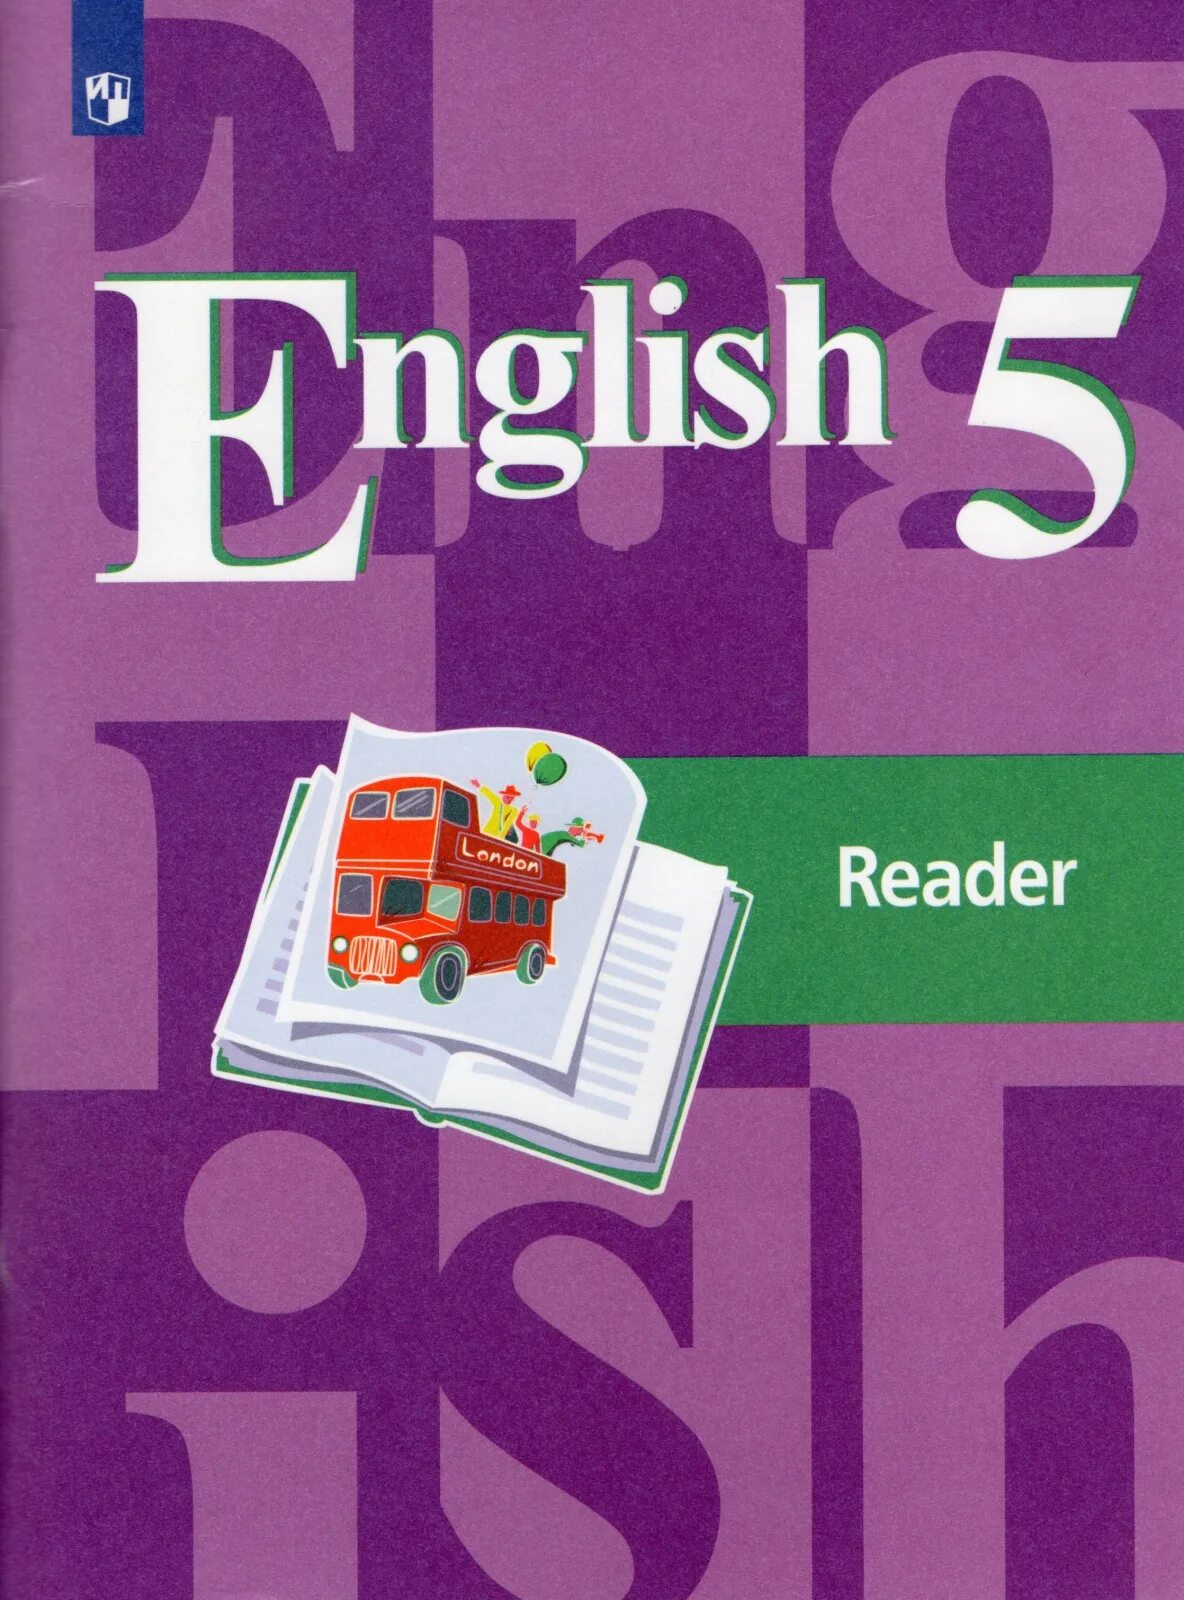 English 5 Reader кузовлев лапа. УМК кузовлев для 5 класса английский. Кузовлев англ. Язык 5 чтение книга. Книга для чтения английский язык 5 класс. Английский язык 5 класс желтая